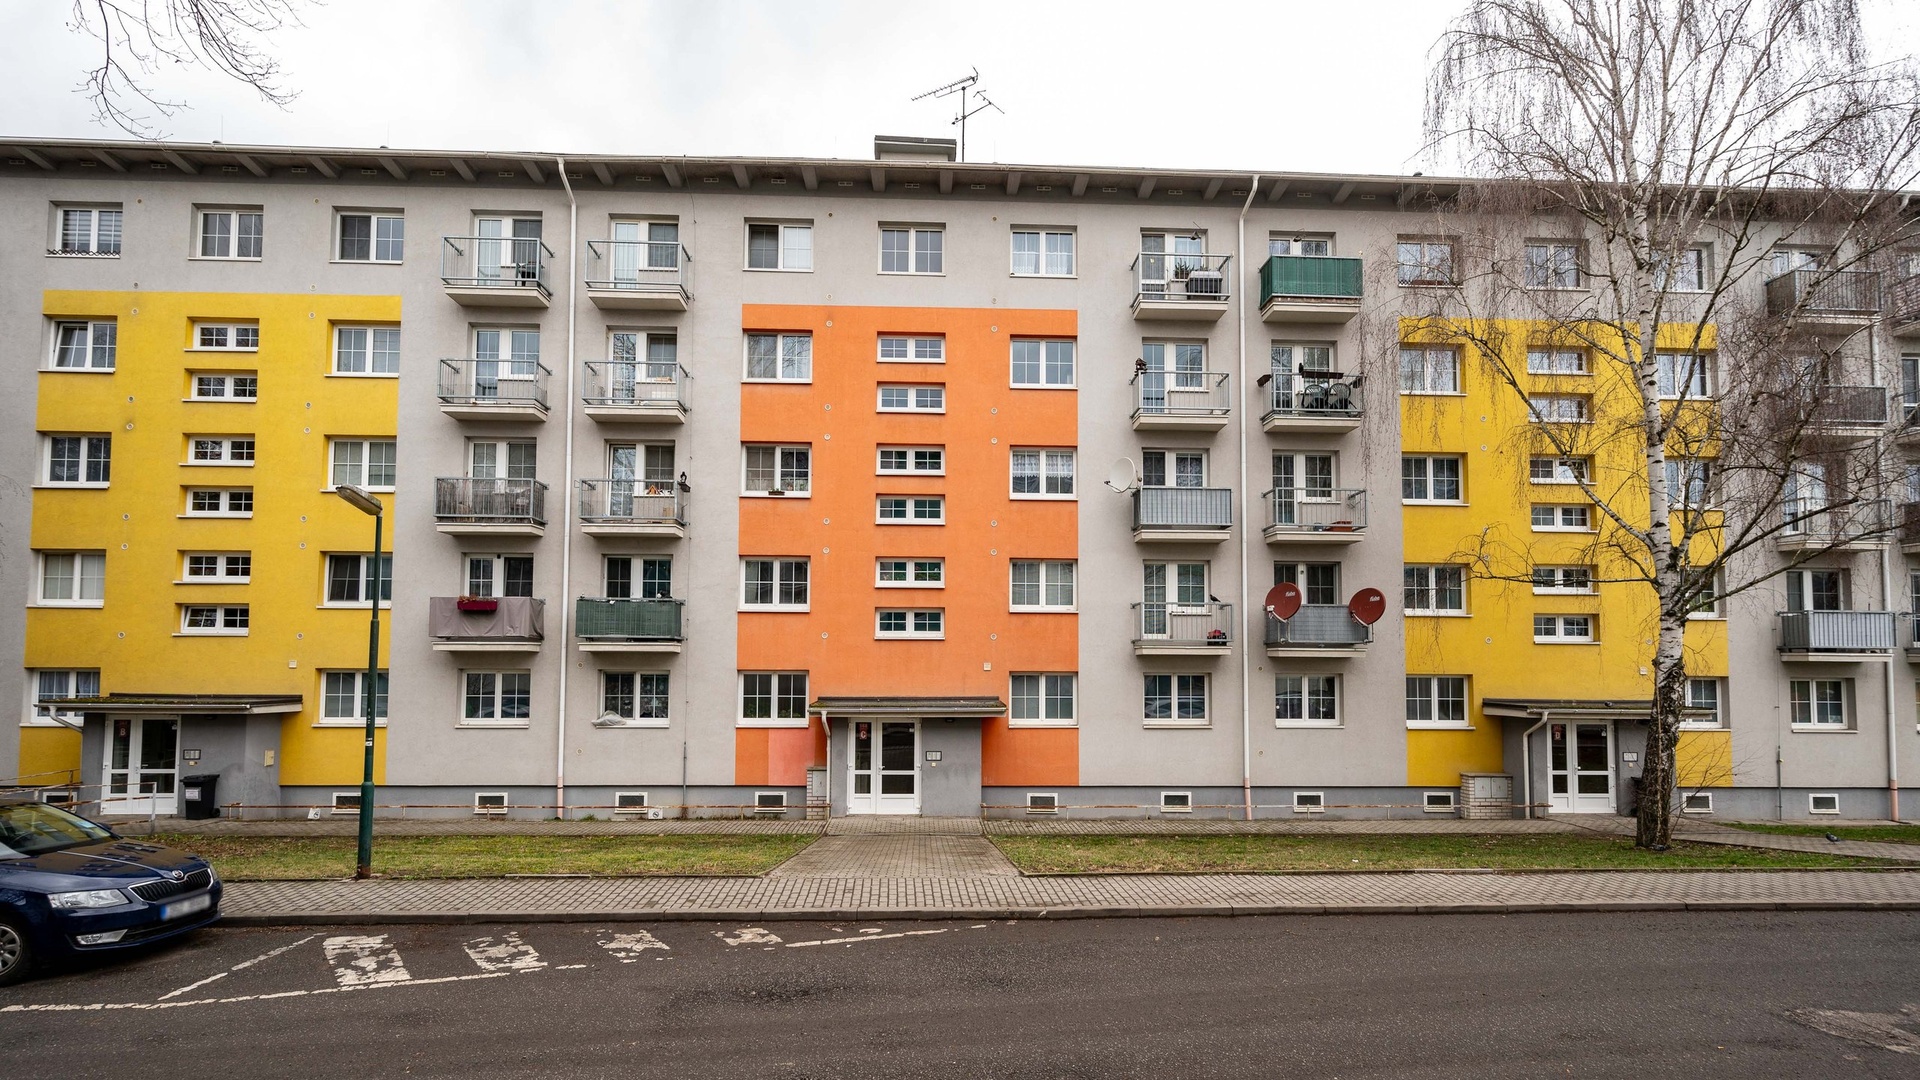 Prodej družstevního bytu 2+kk, 46 m², 2x balkón, sklep a parkovací stání na hlídaném parkovišti - Milovice - Mladá